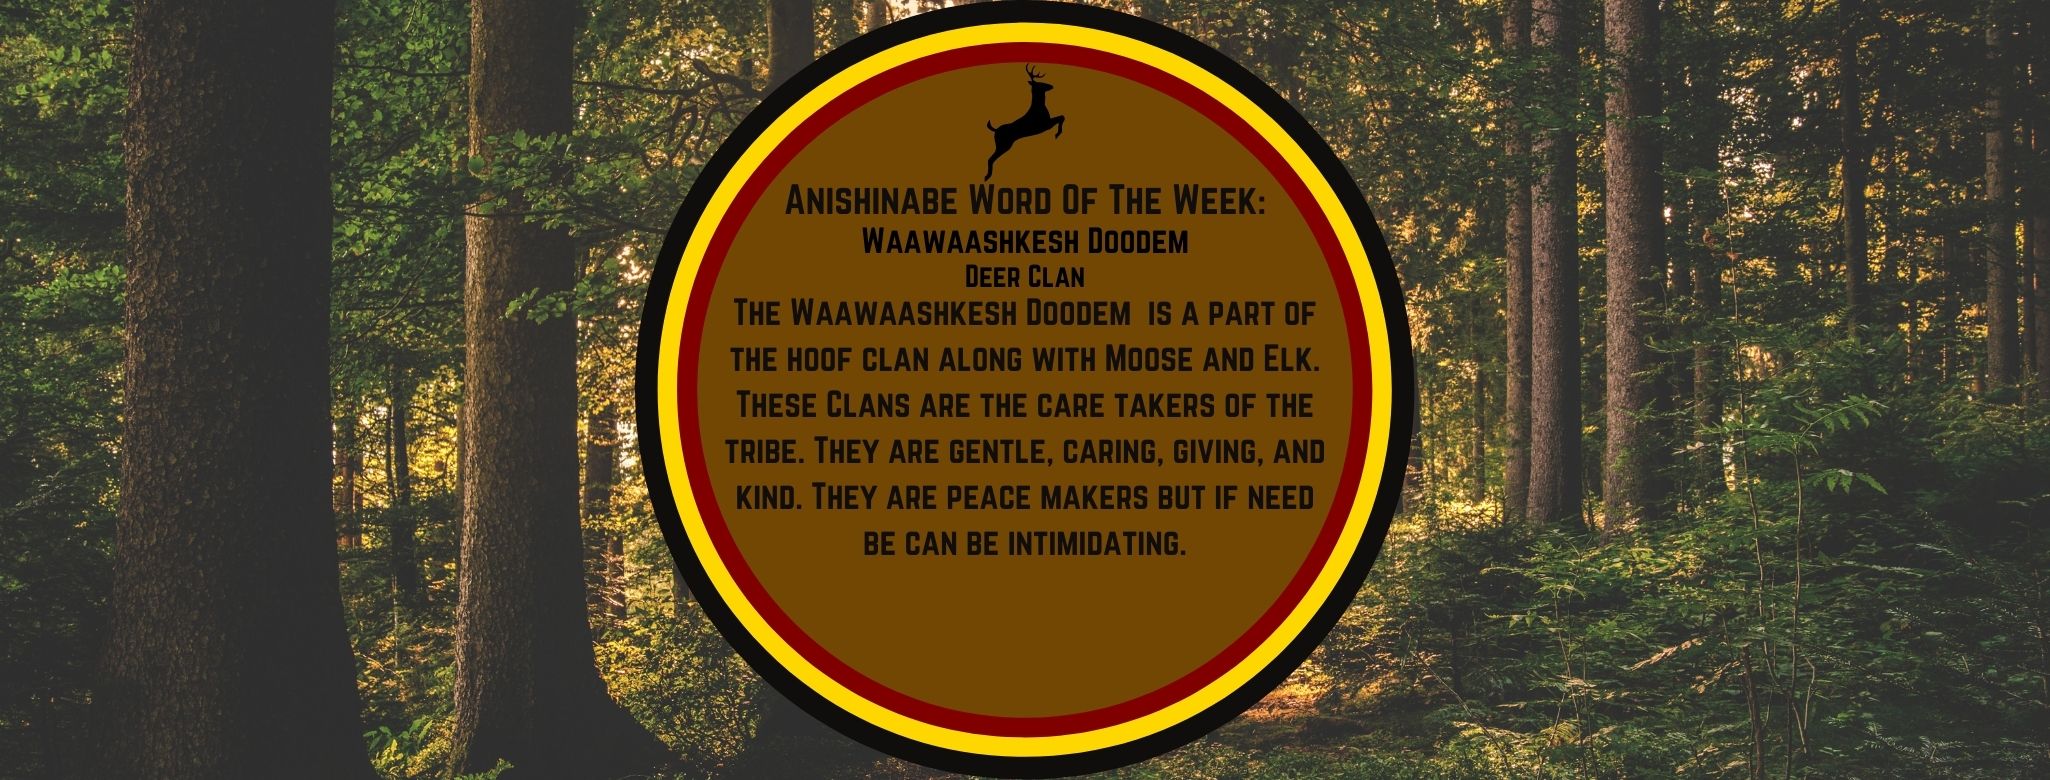 Anishinabe Word of the Week Waawaashkesh Dodem